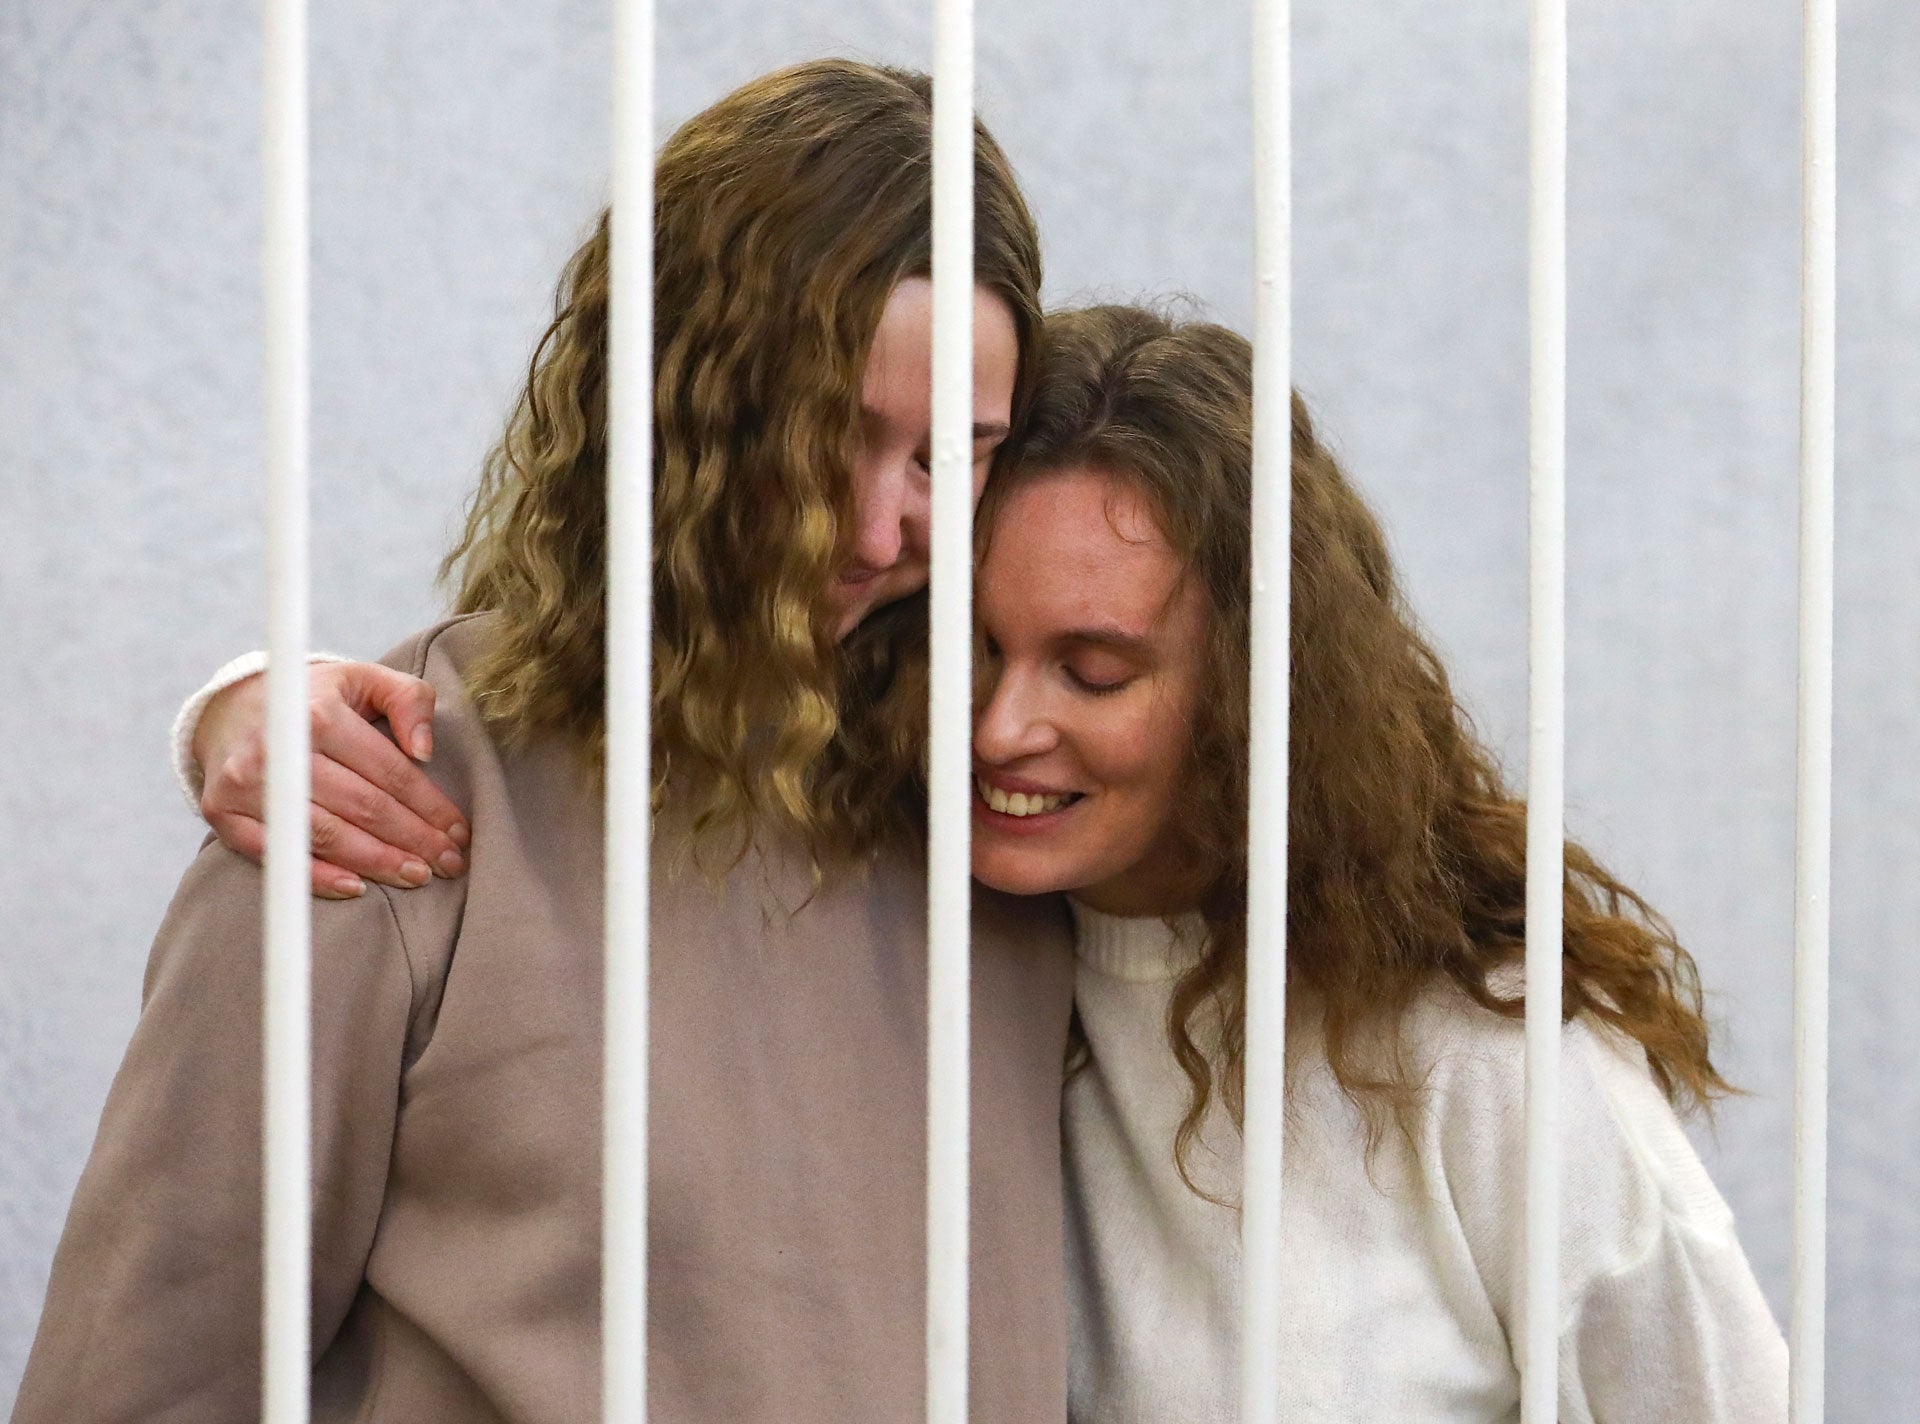 La journaliste biélorusse Ekaterina Bakhvalova (à droite) serre l'épaule de sa collègue Daria Chultsova (à gauche) dans la cage servant de box des accusés, lors de leur procès à Minsk, en Biélorussie, le 9 février 2021.